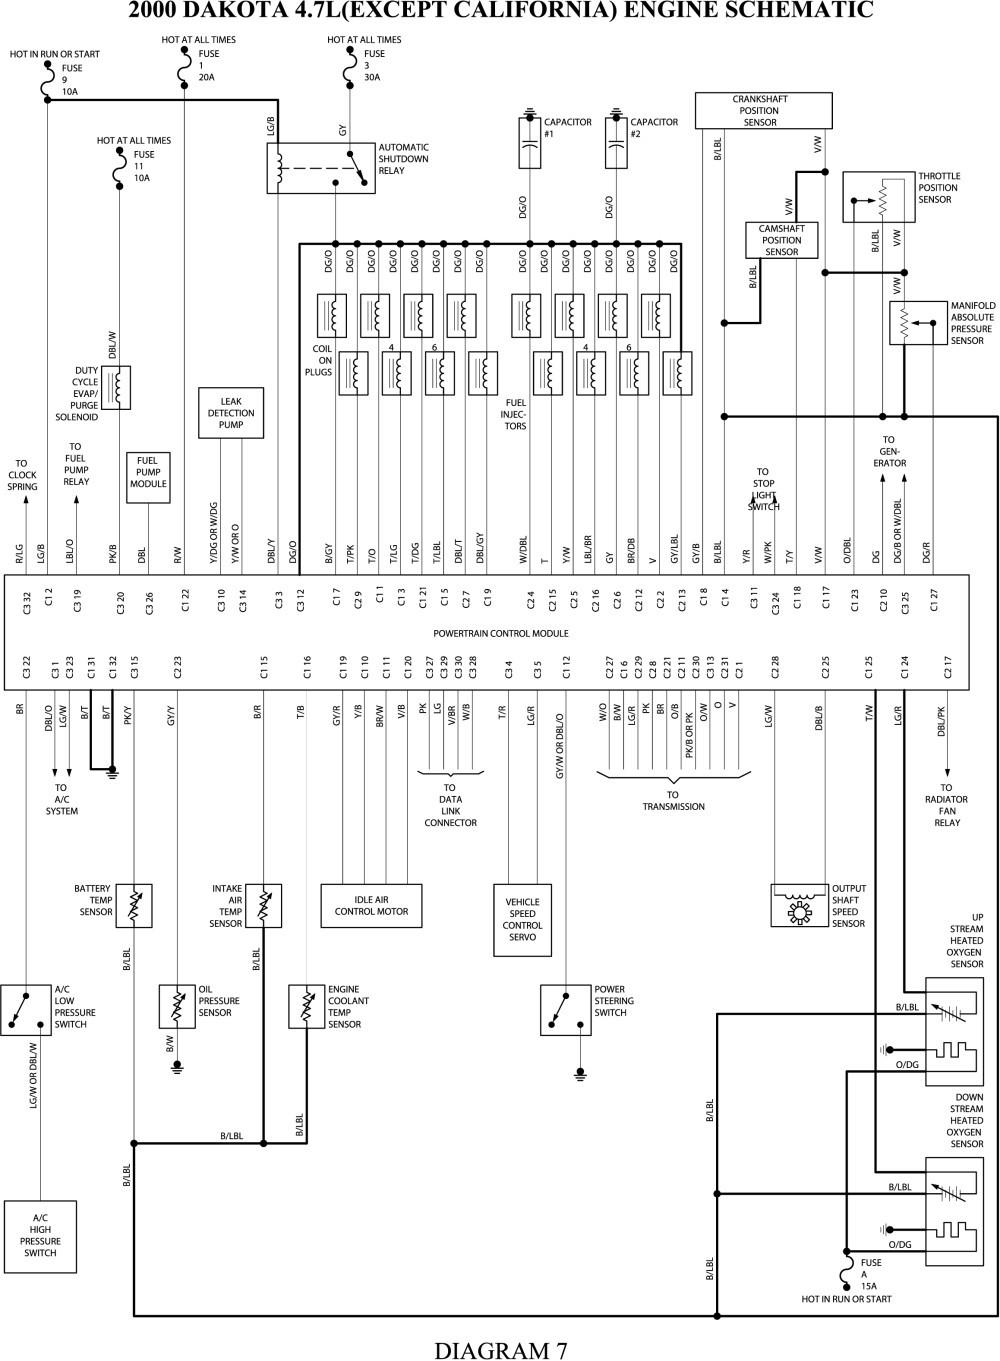 2000 dodge dakota 4x4 wiring diagram wiring diagram expert